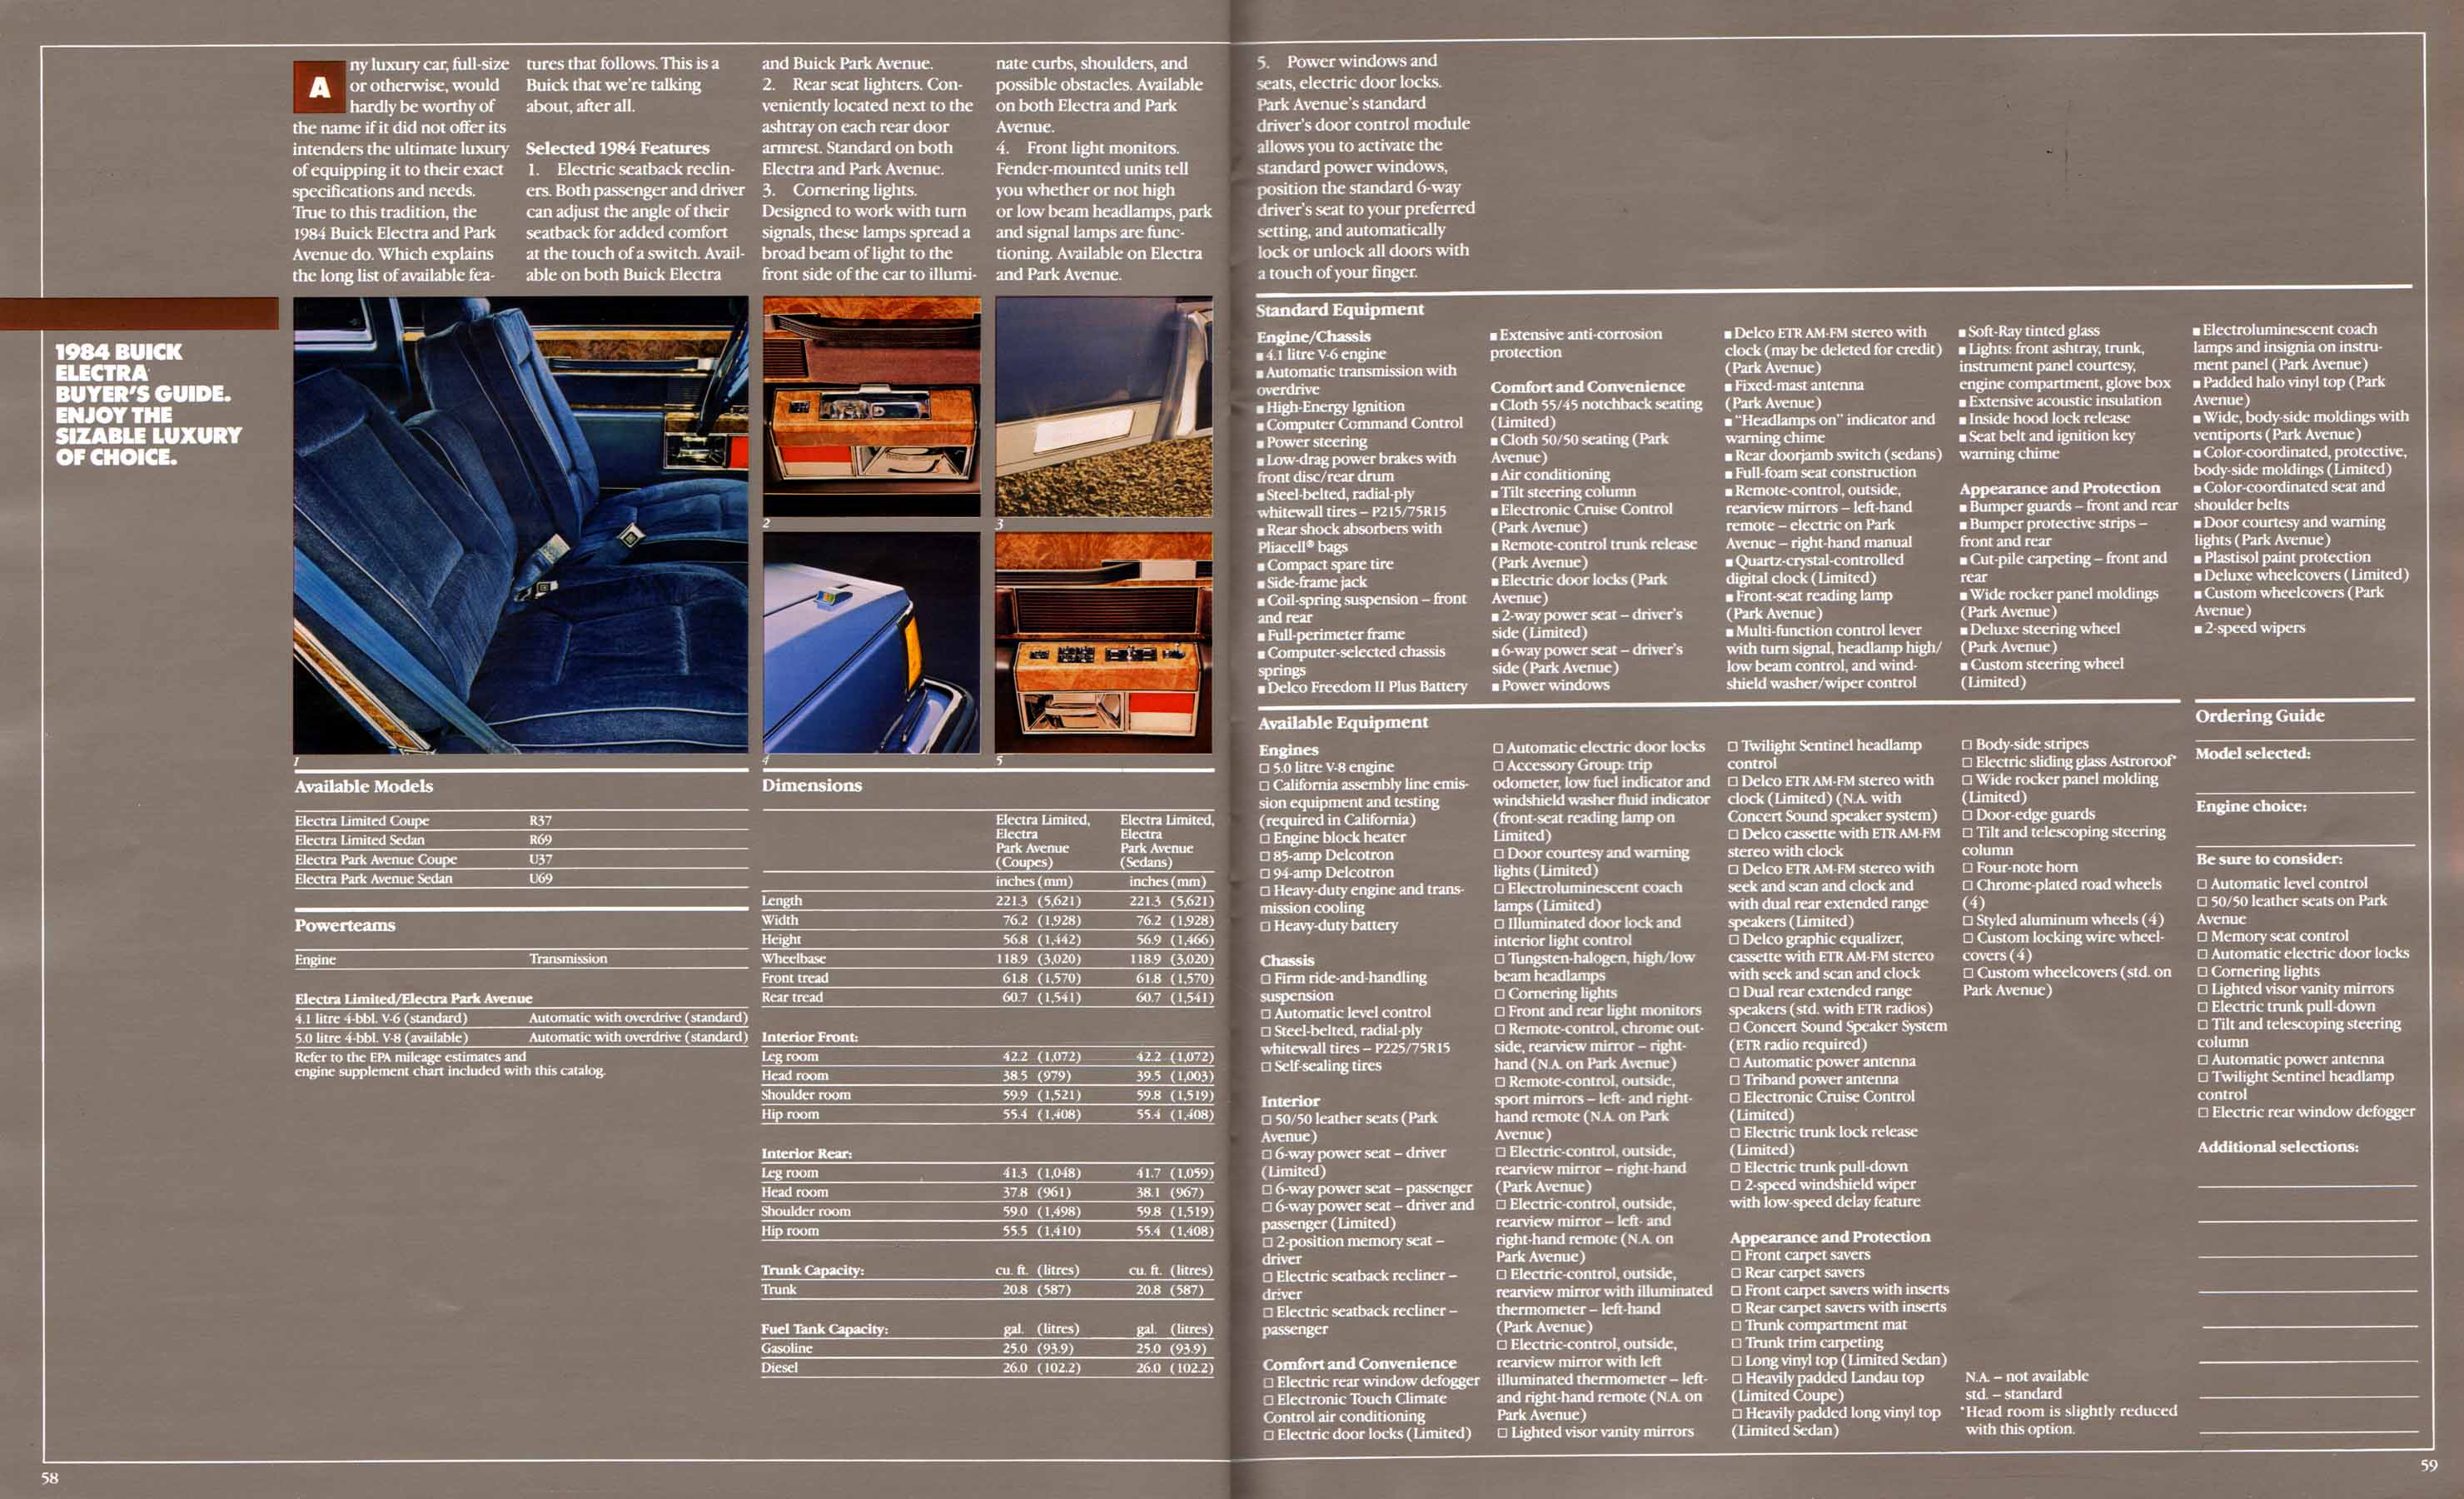 1984 Buick Full Line Prestige-58-59